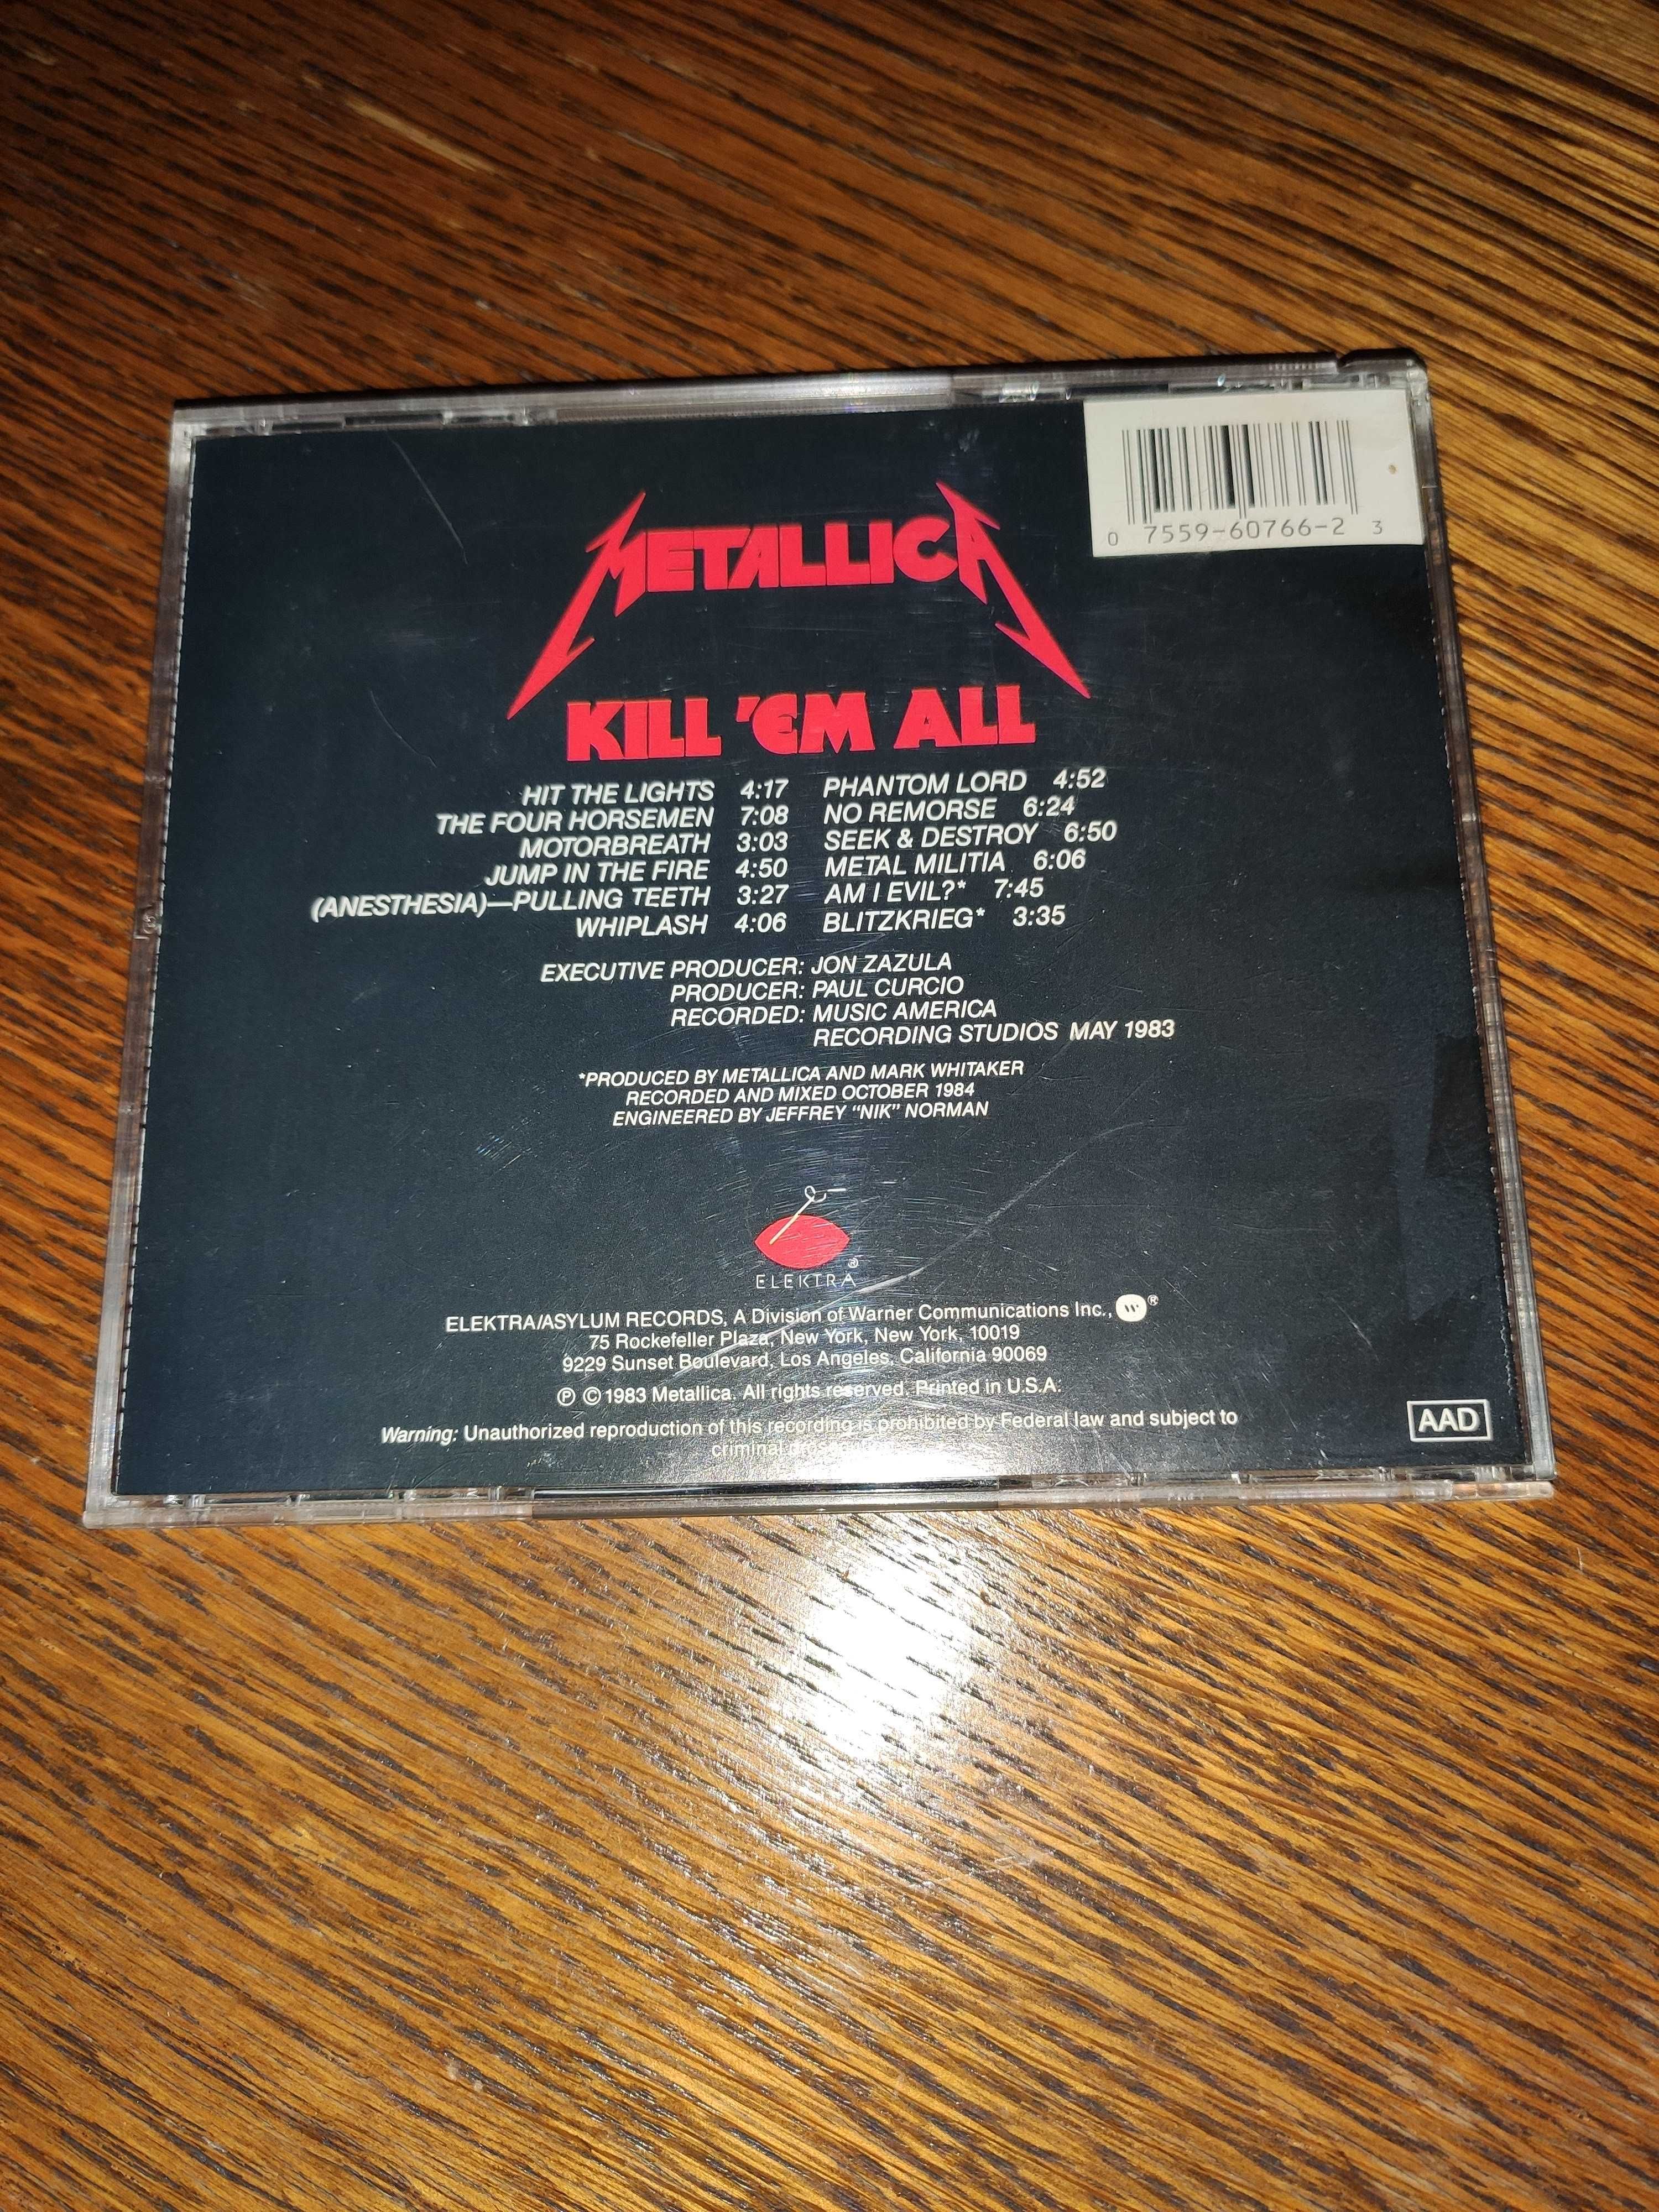 Metallica - Kill 'em all, CD 1988, Elektra, USA